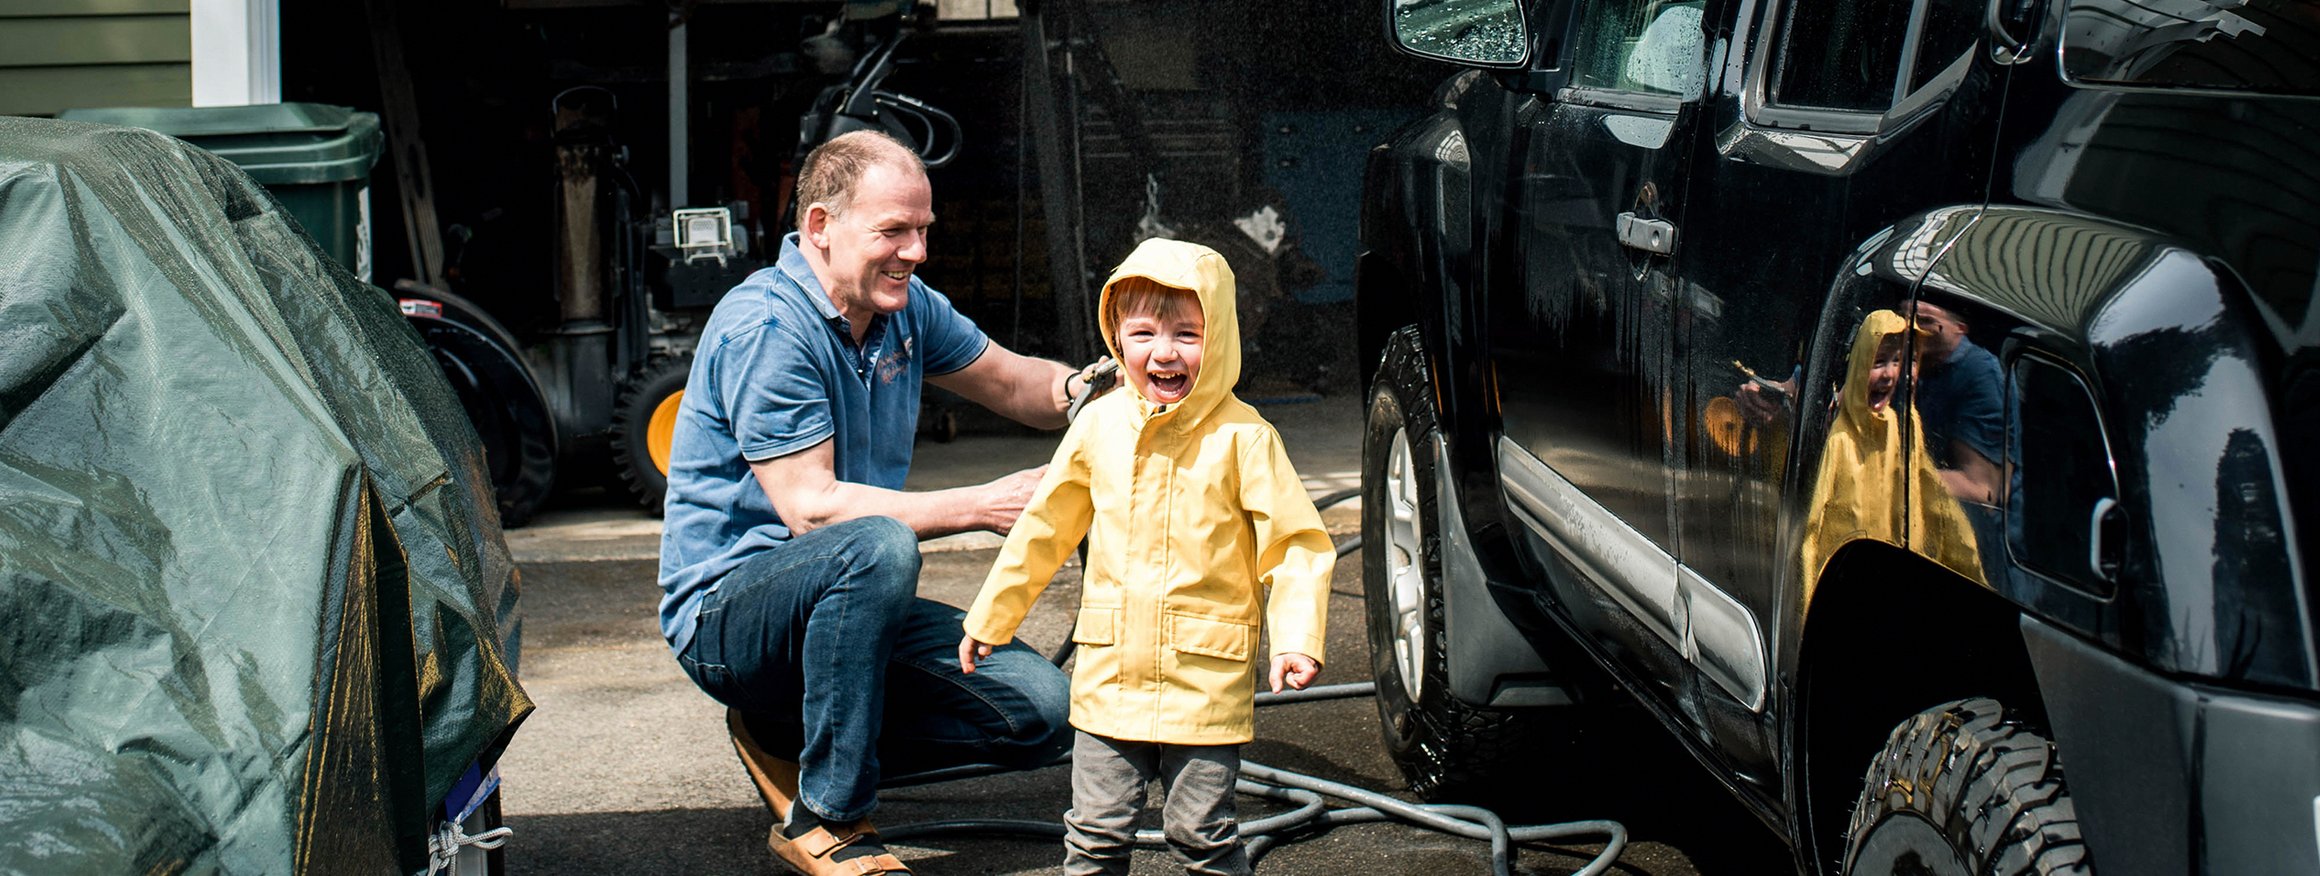 Ein Mann wäscht fröhlich gemeinsam mit einem kleinen Jungen seinen schwarzen SUV